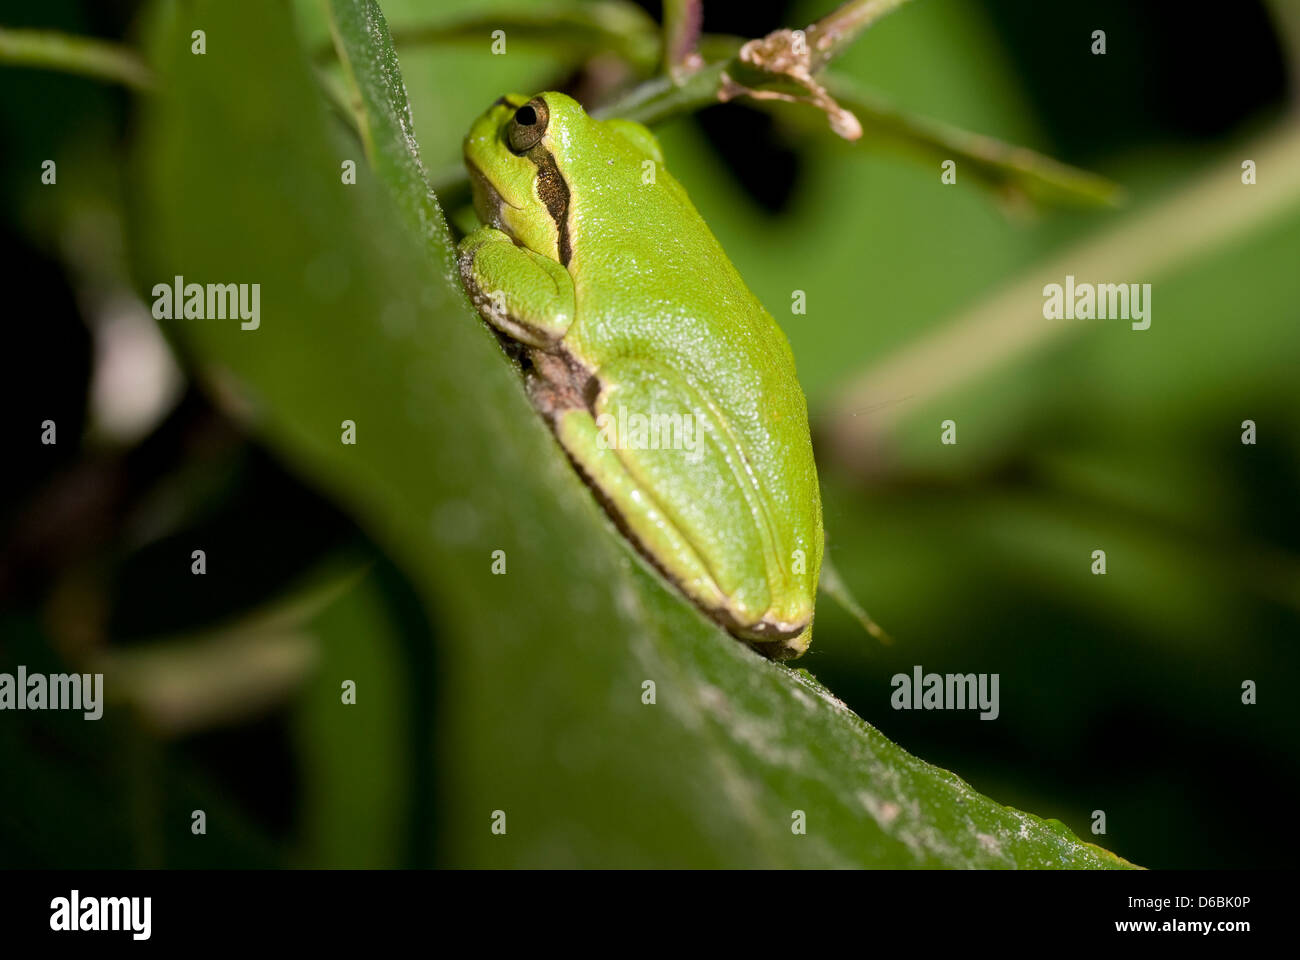 green frog sitting on leaf in forest wildlife batrachian leaf Stock Photo